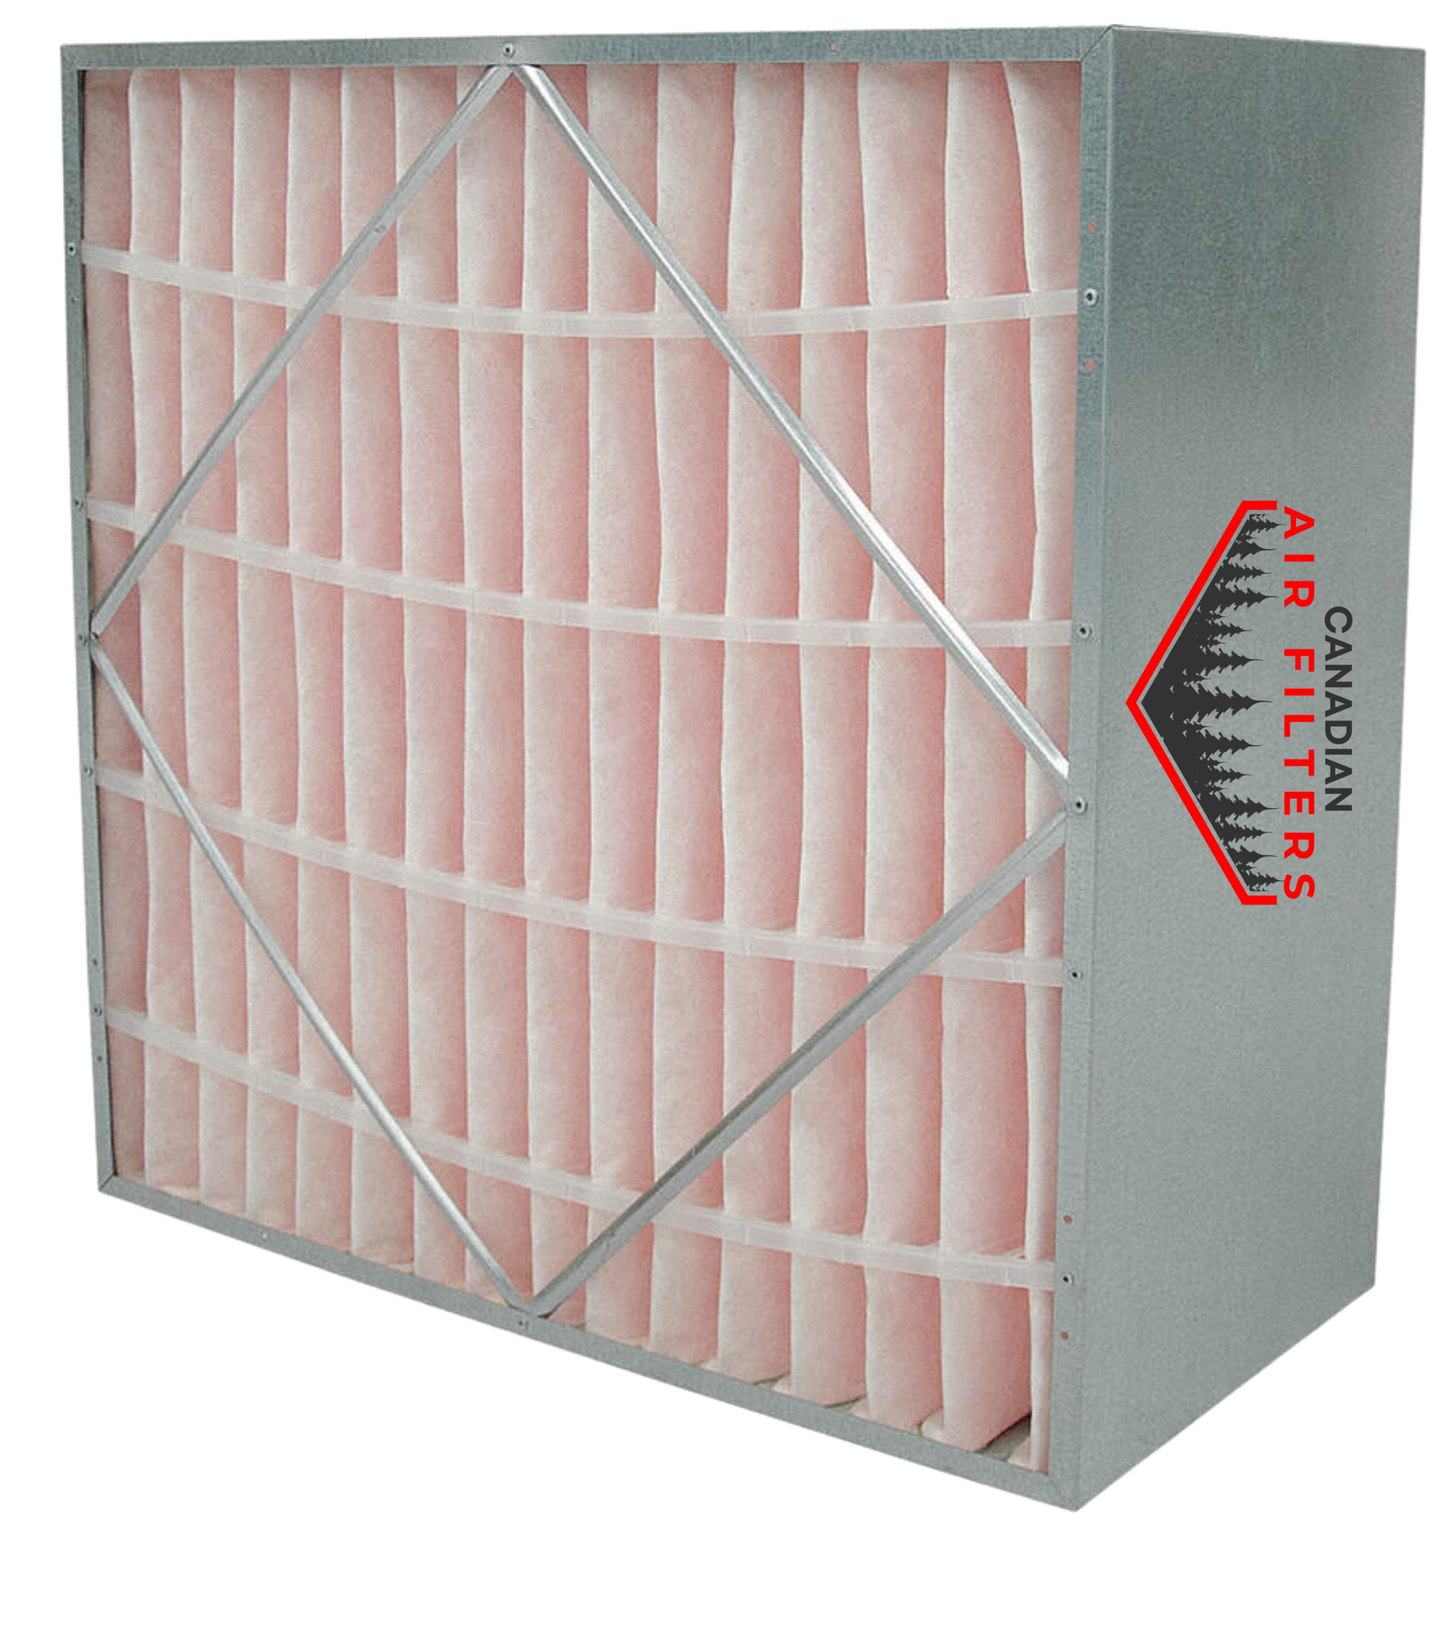 12 x 24 x 12 - Rigid Cell Air Filters Box Style - Merv 13 (Each)